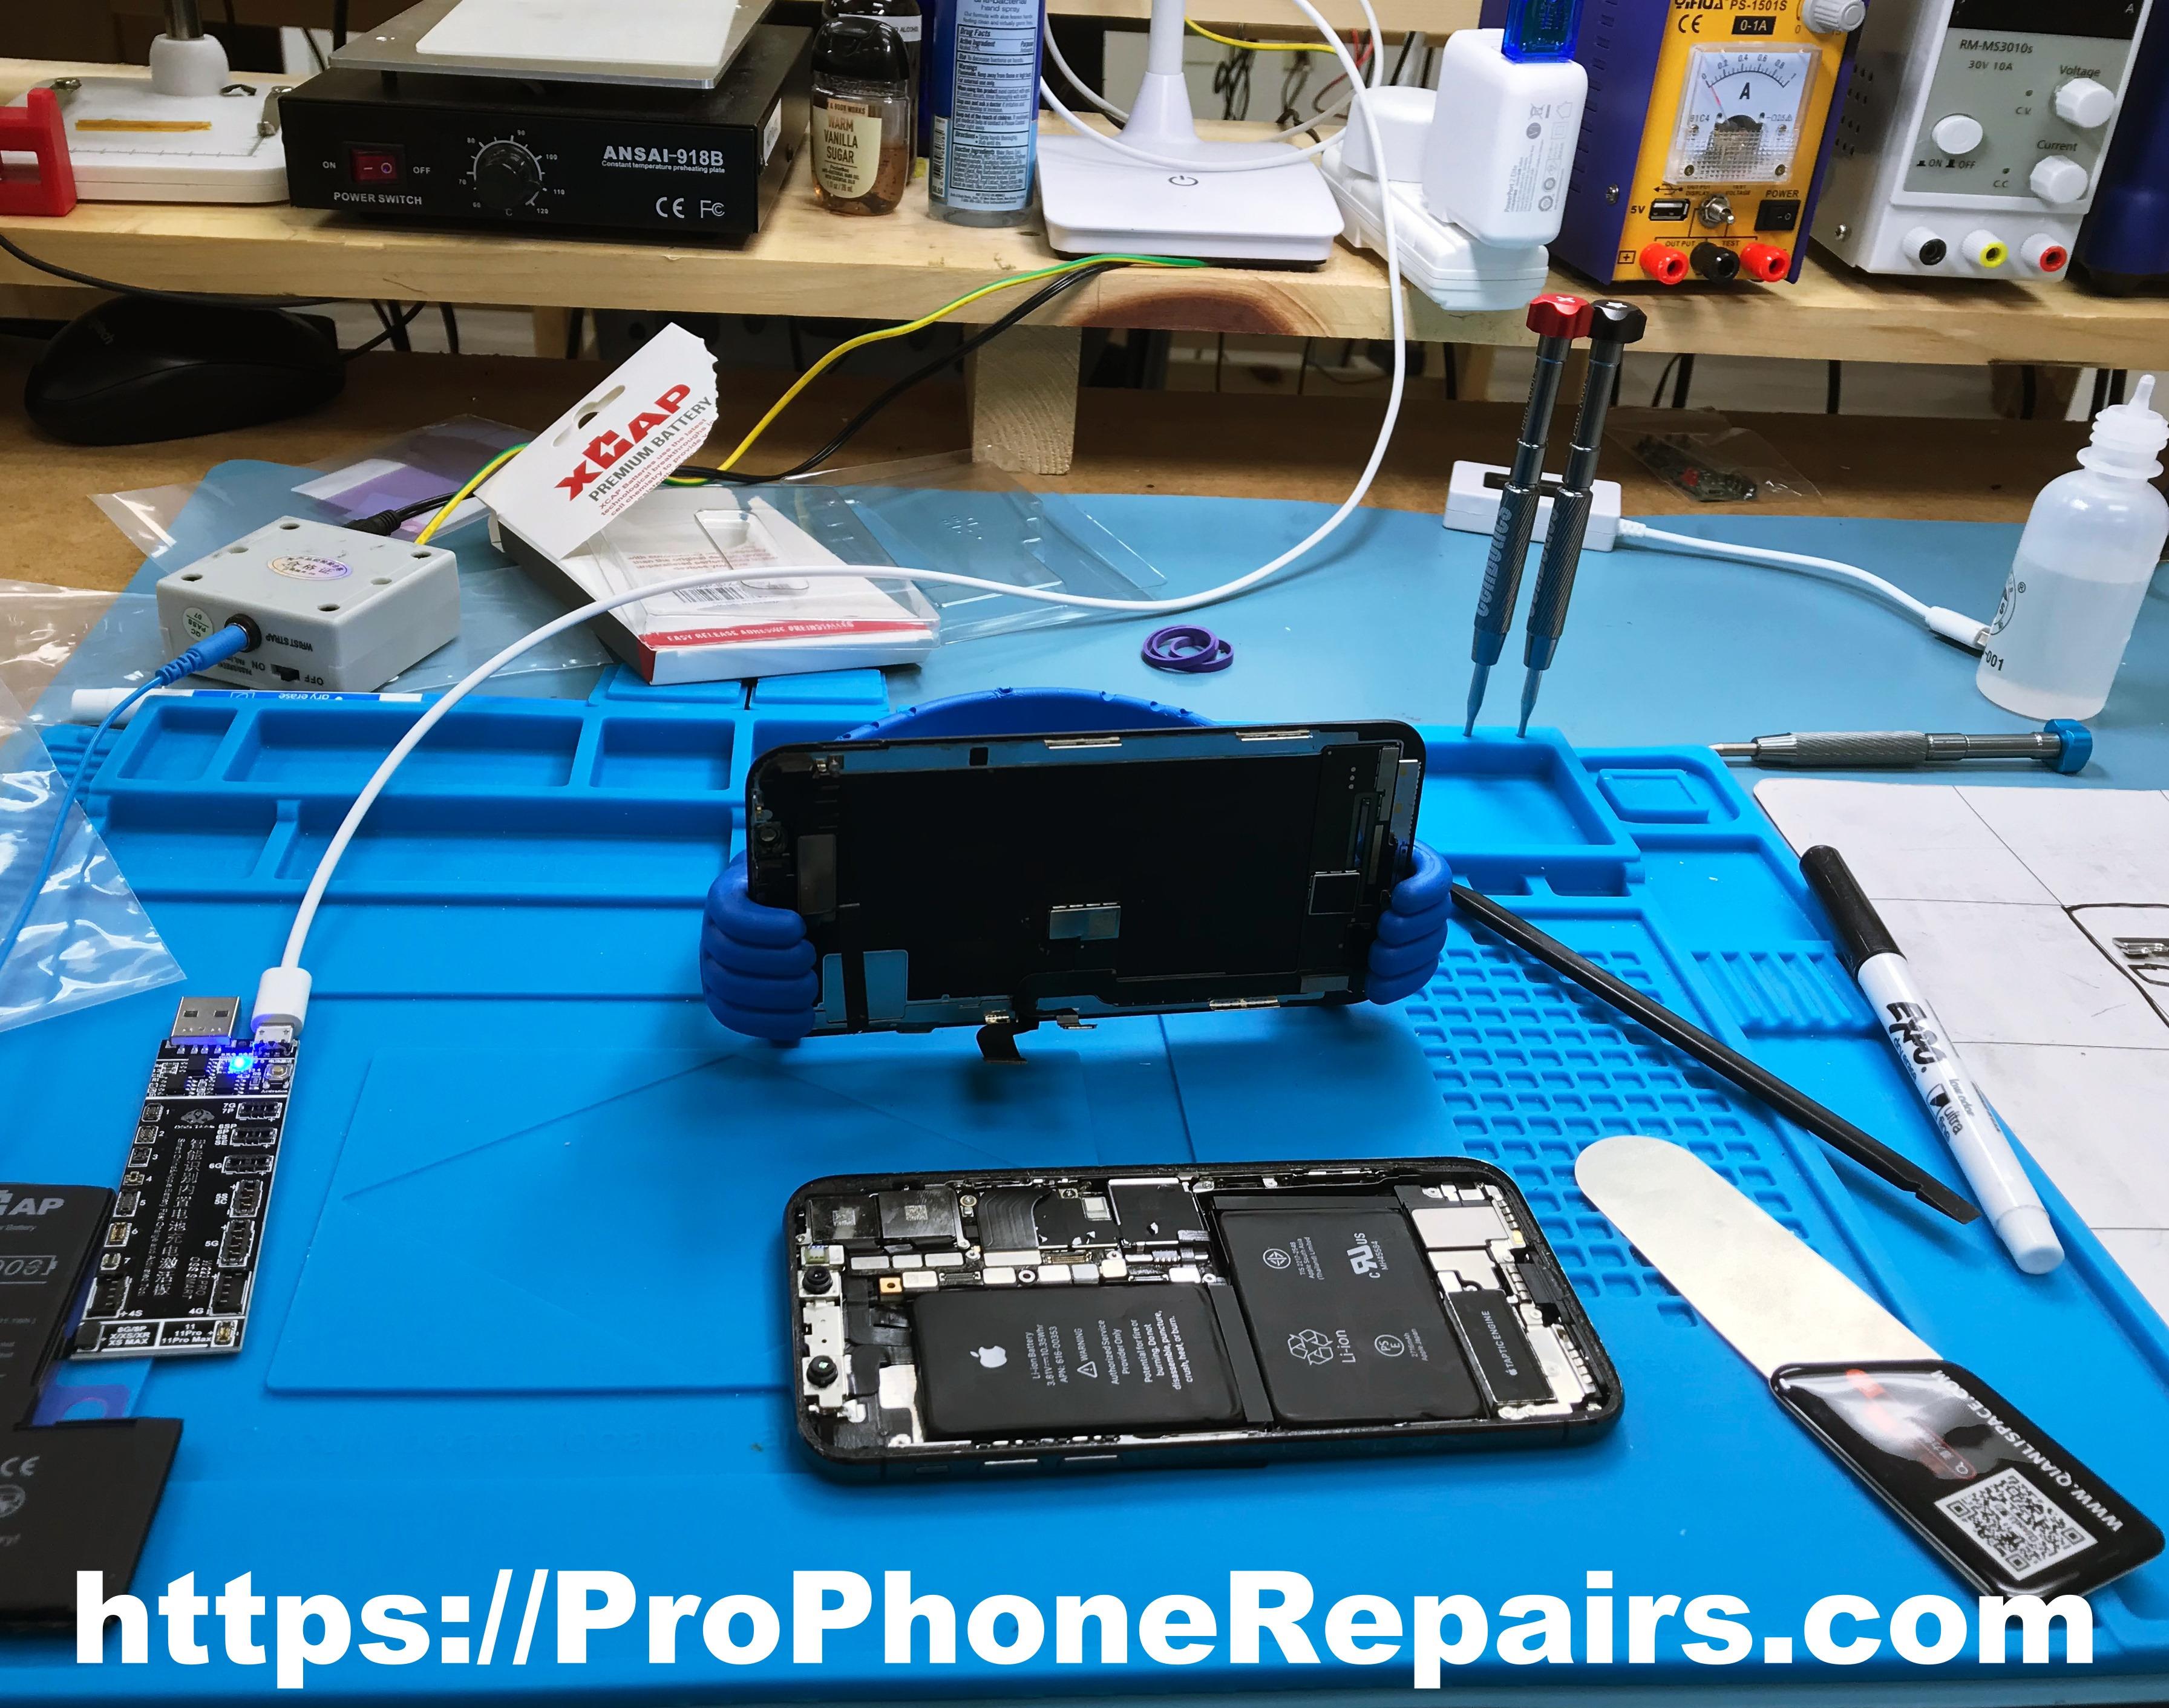 iPhone repair station - Pro Phone Repairs of Albuquerque